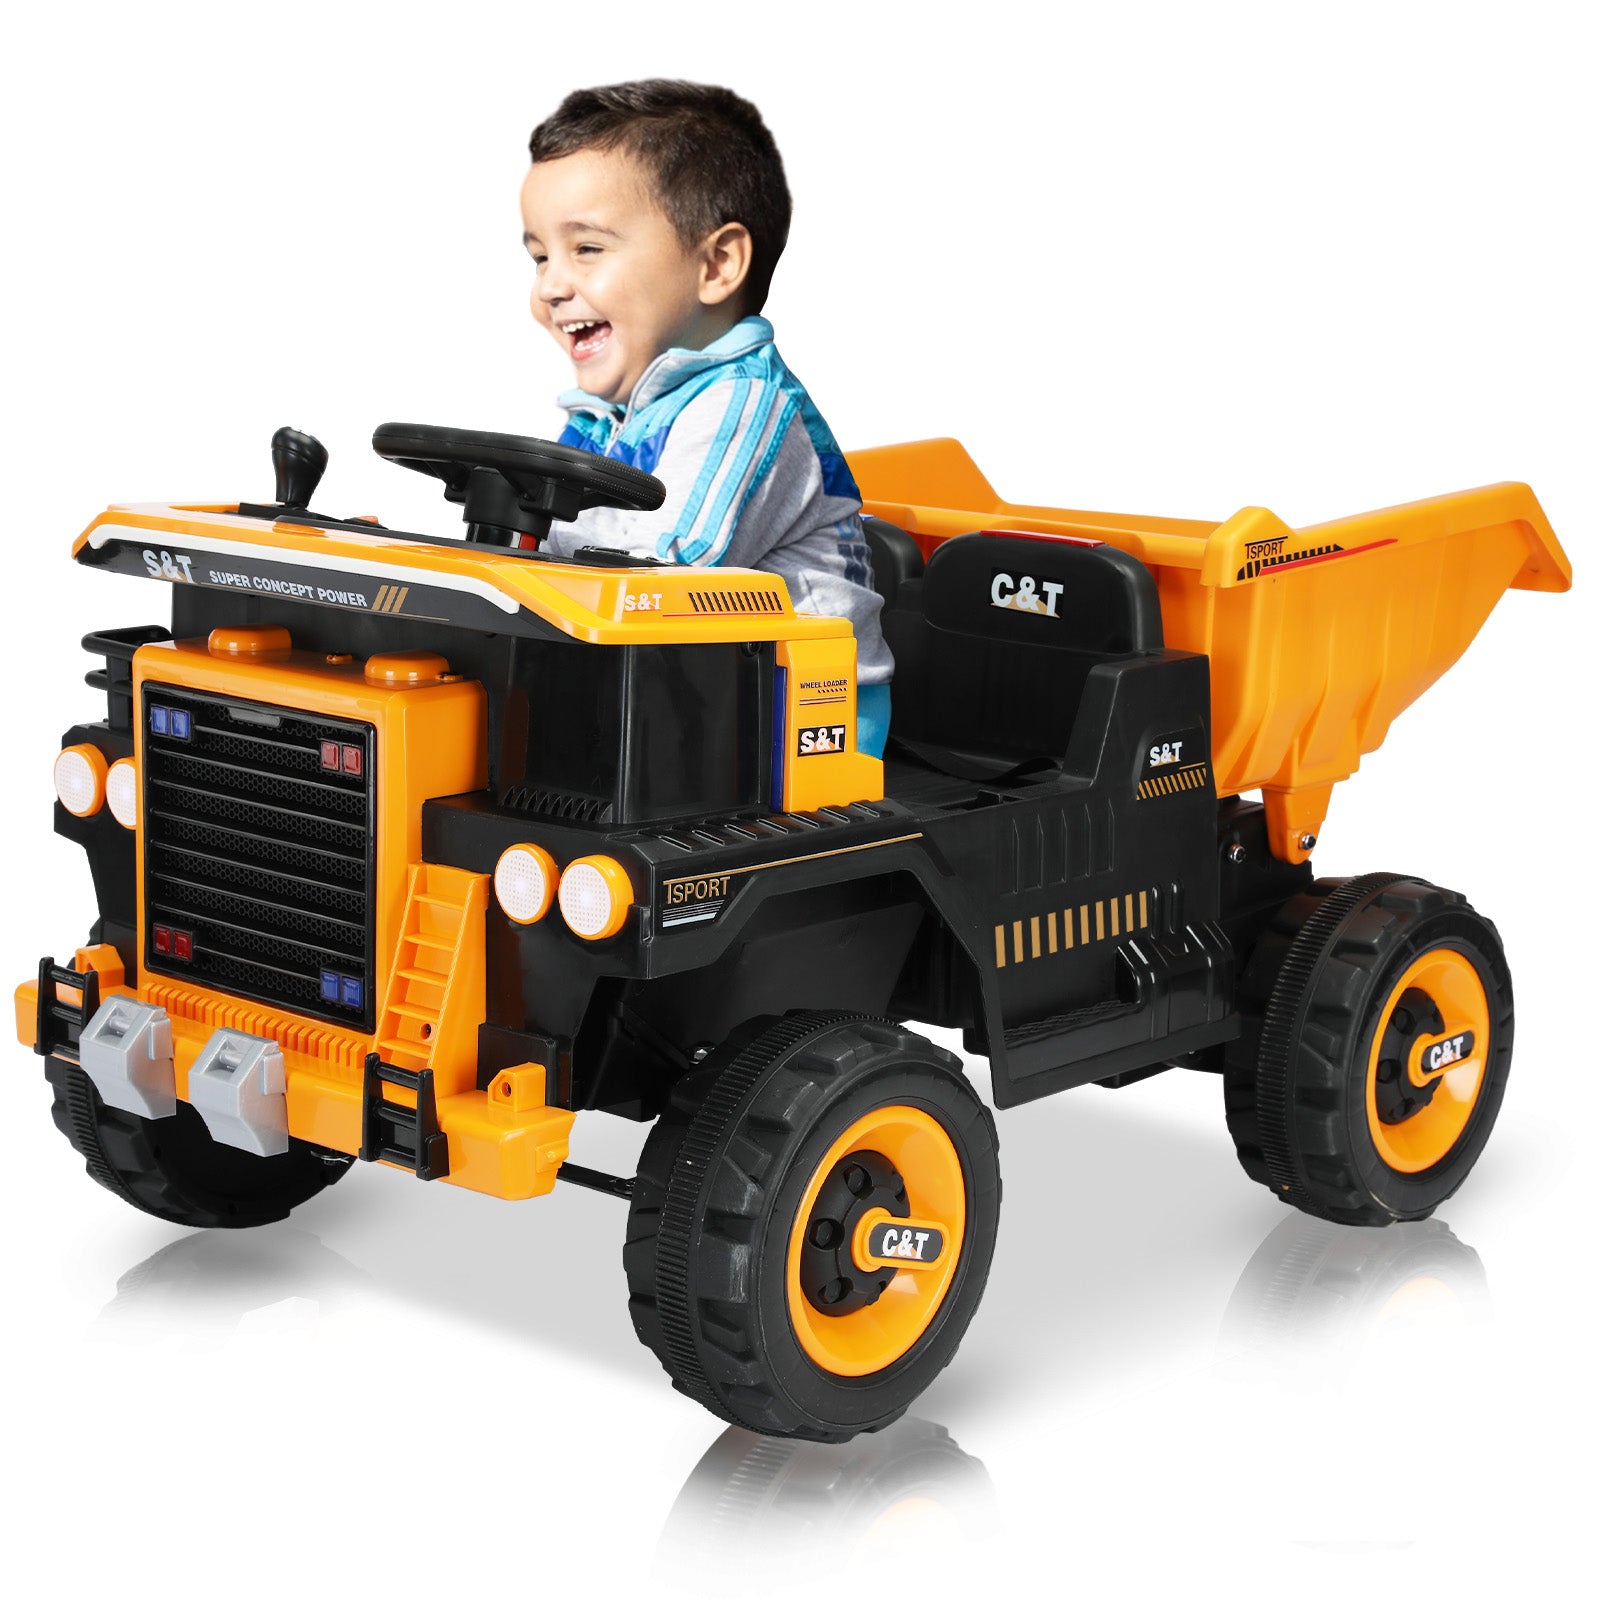 XJD 12V Kids Ride On Truck Car w/Parent Remote Control, Spring Suspension, LED Lights, USB Port, Bluetooth - Orange